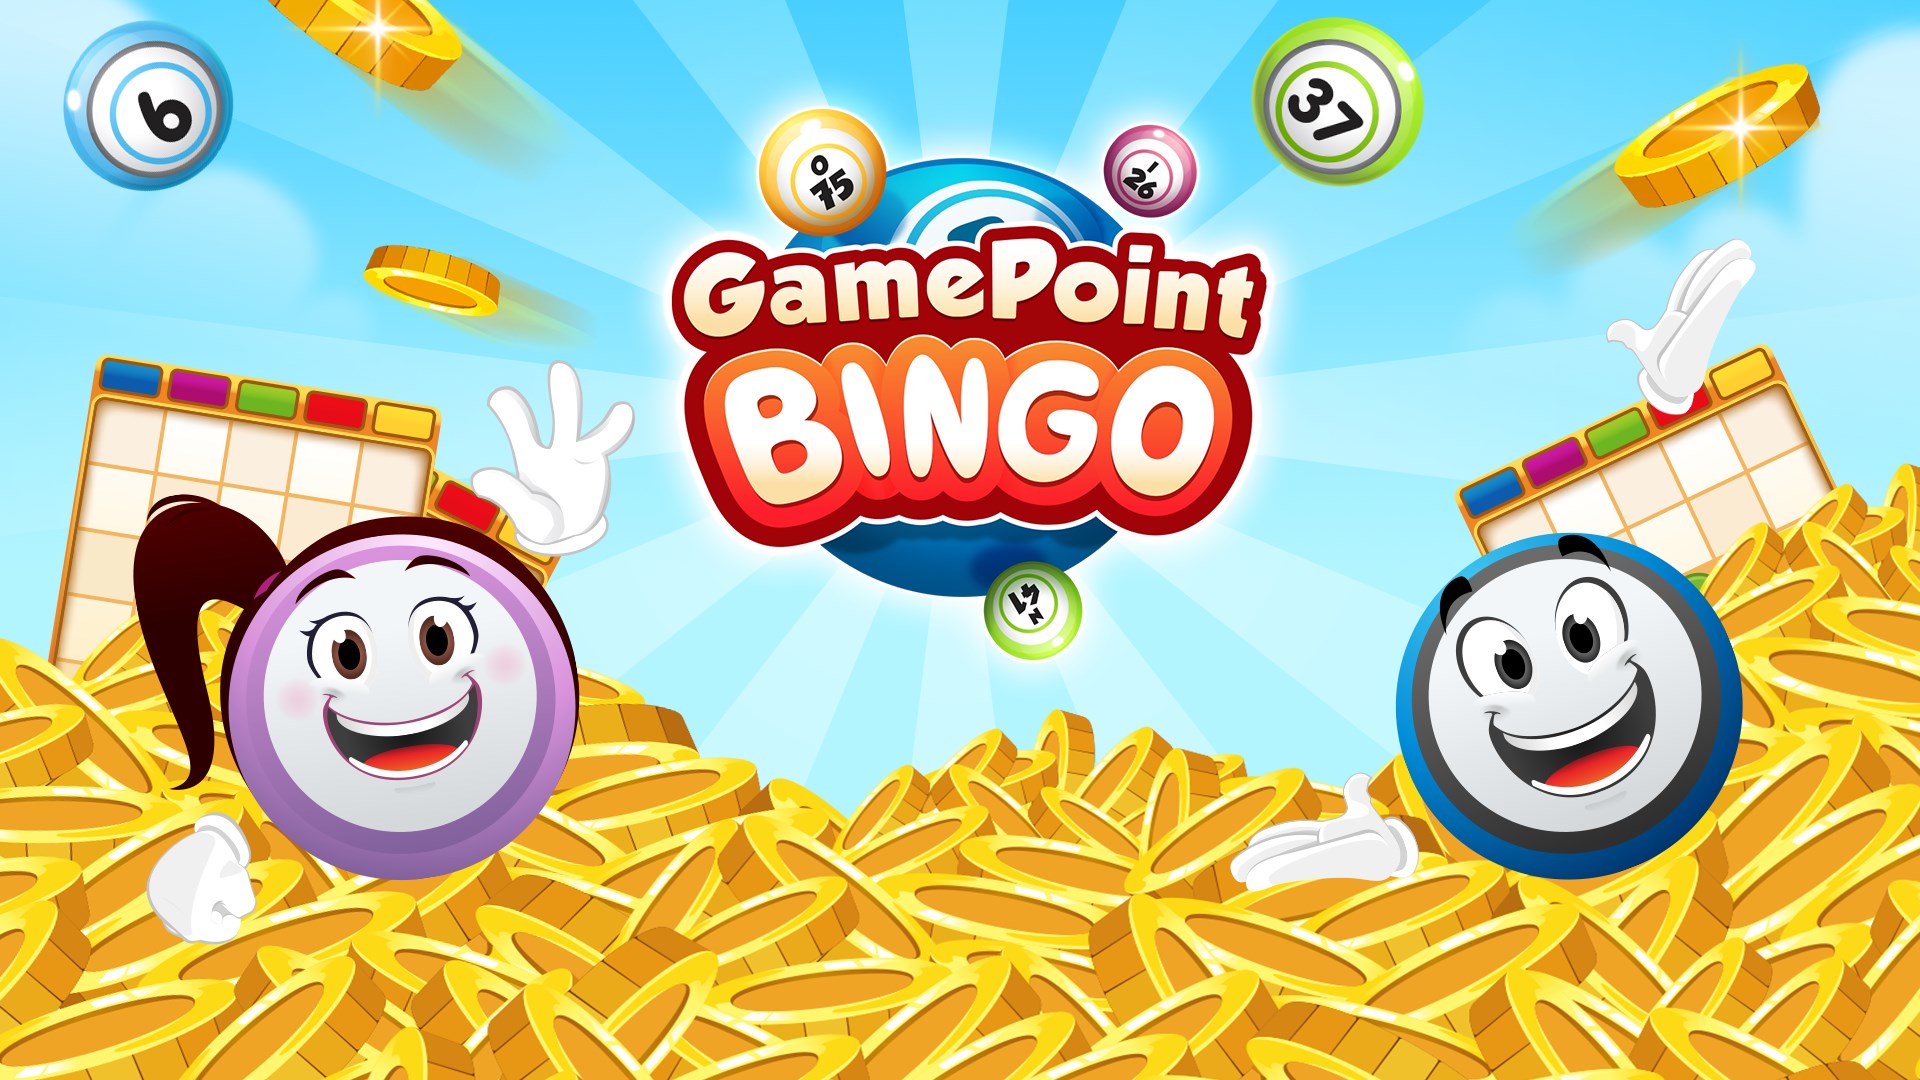 Gamepoint Bingo